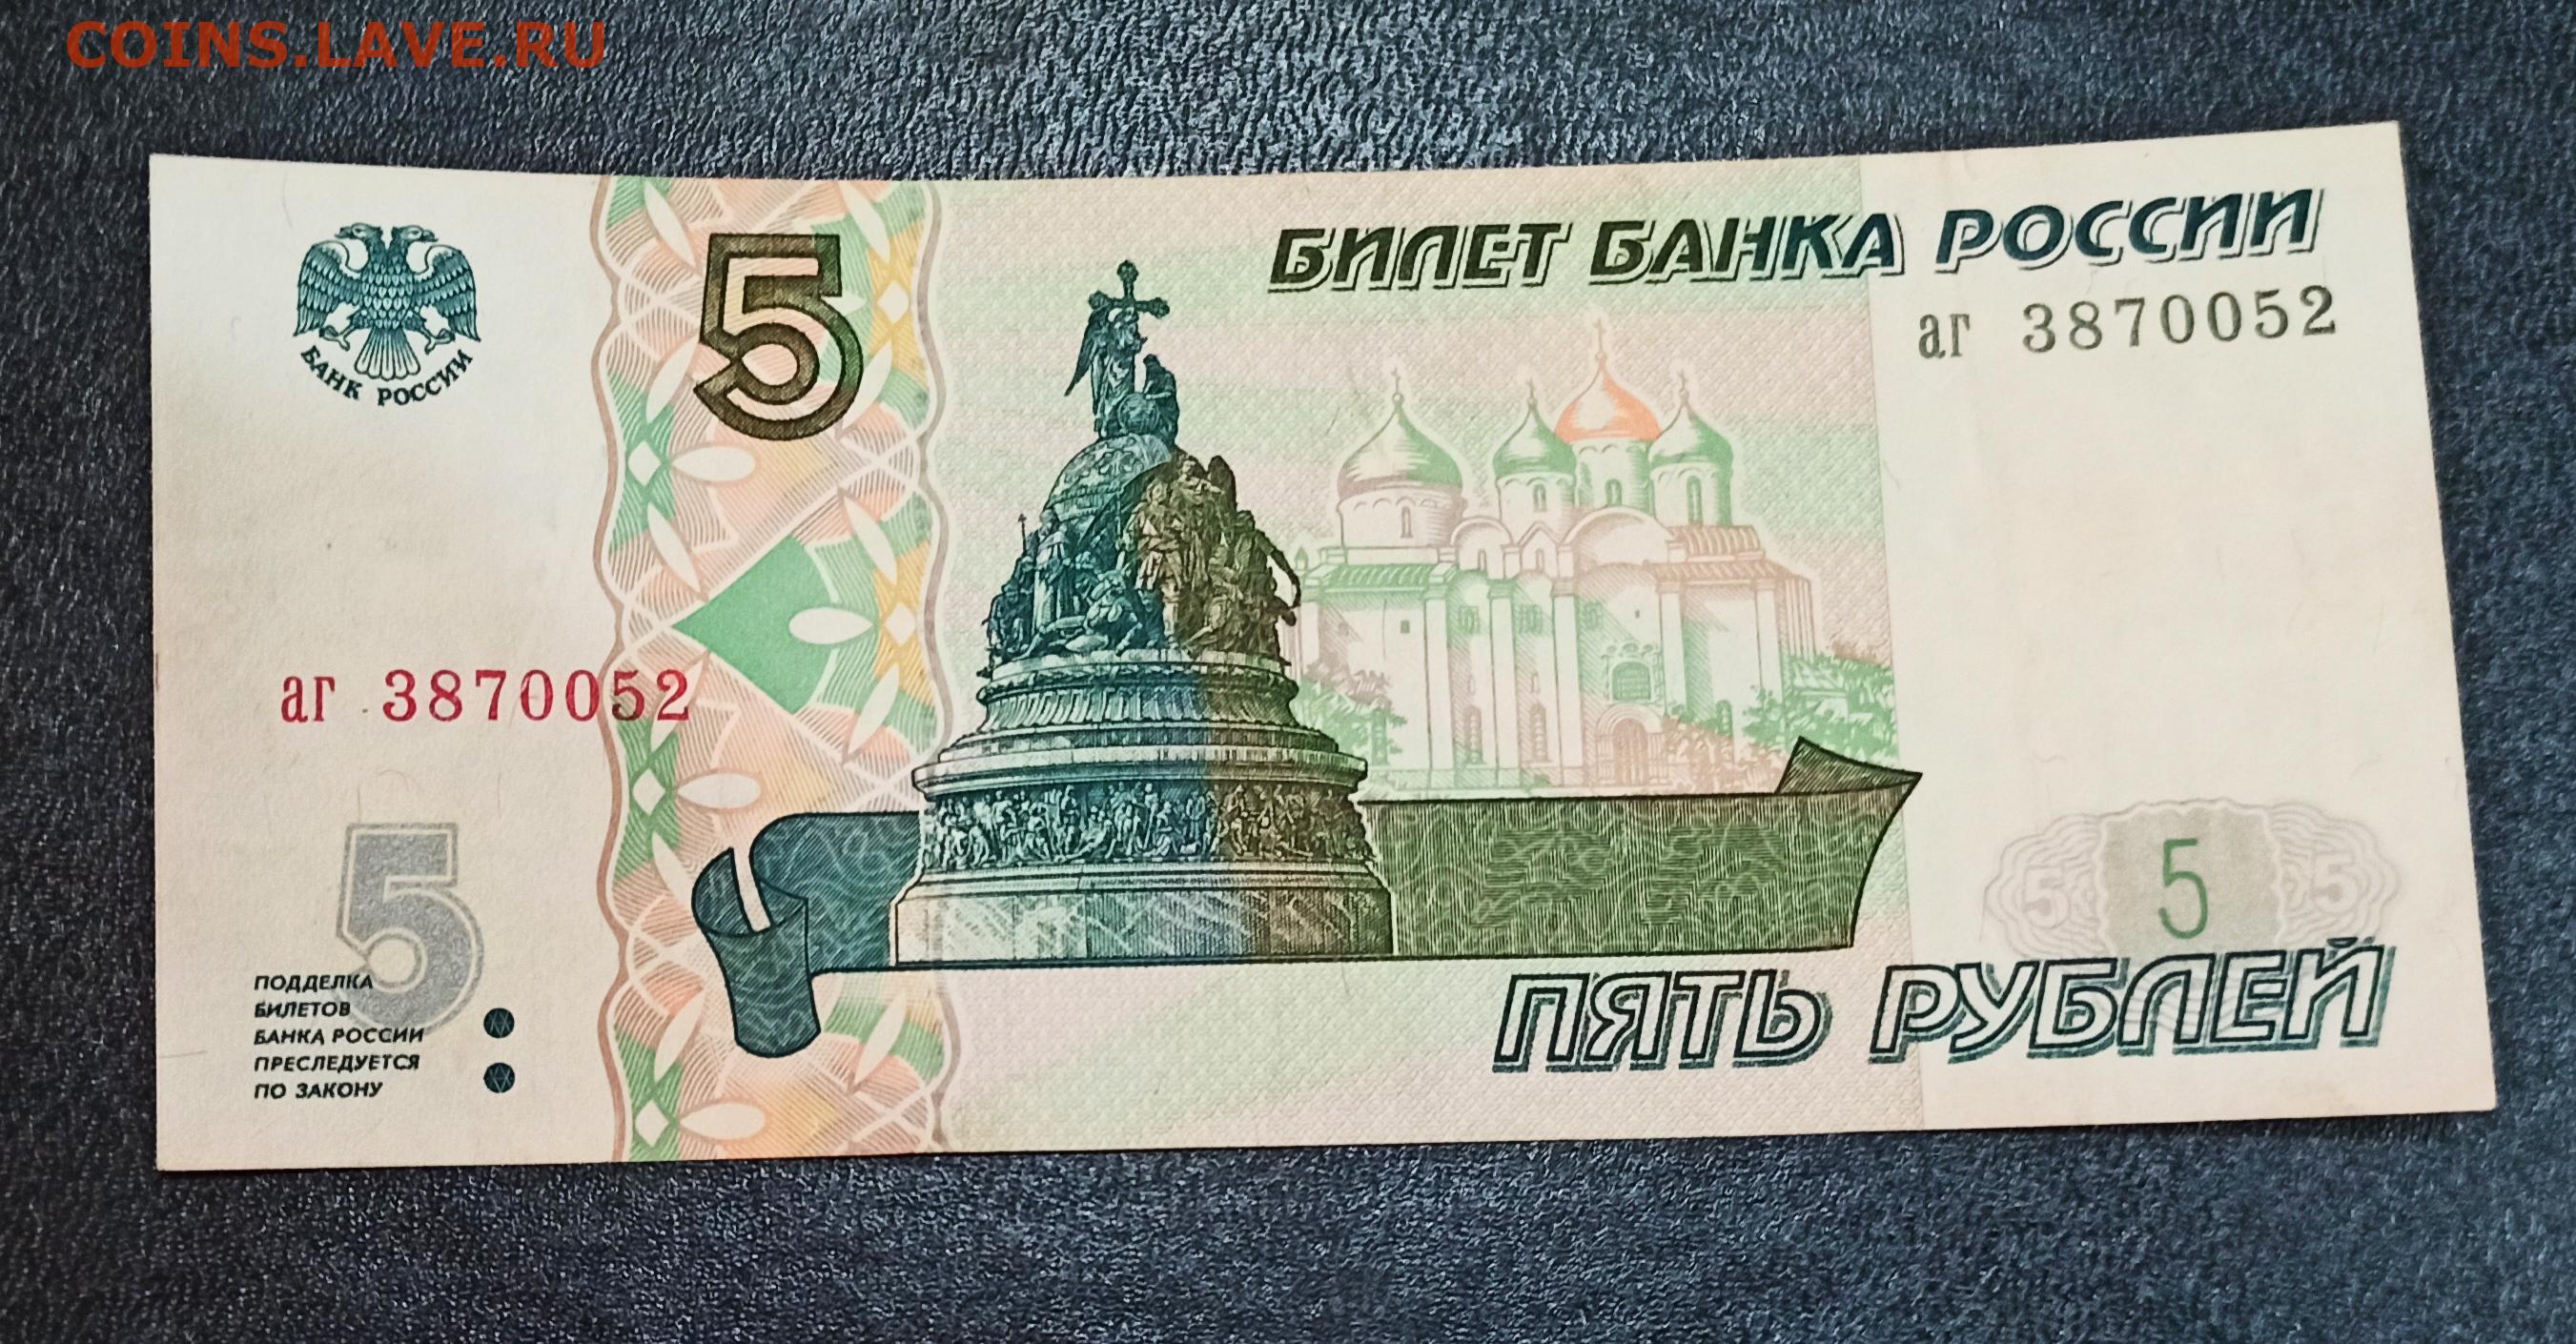 5 Рублей 1998 бумажные. Российские 5 рублей бумажные. Банкнота 5 рублей. Пять рублей купюра. Как класть 5 рублей